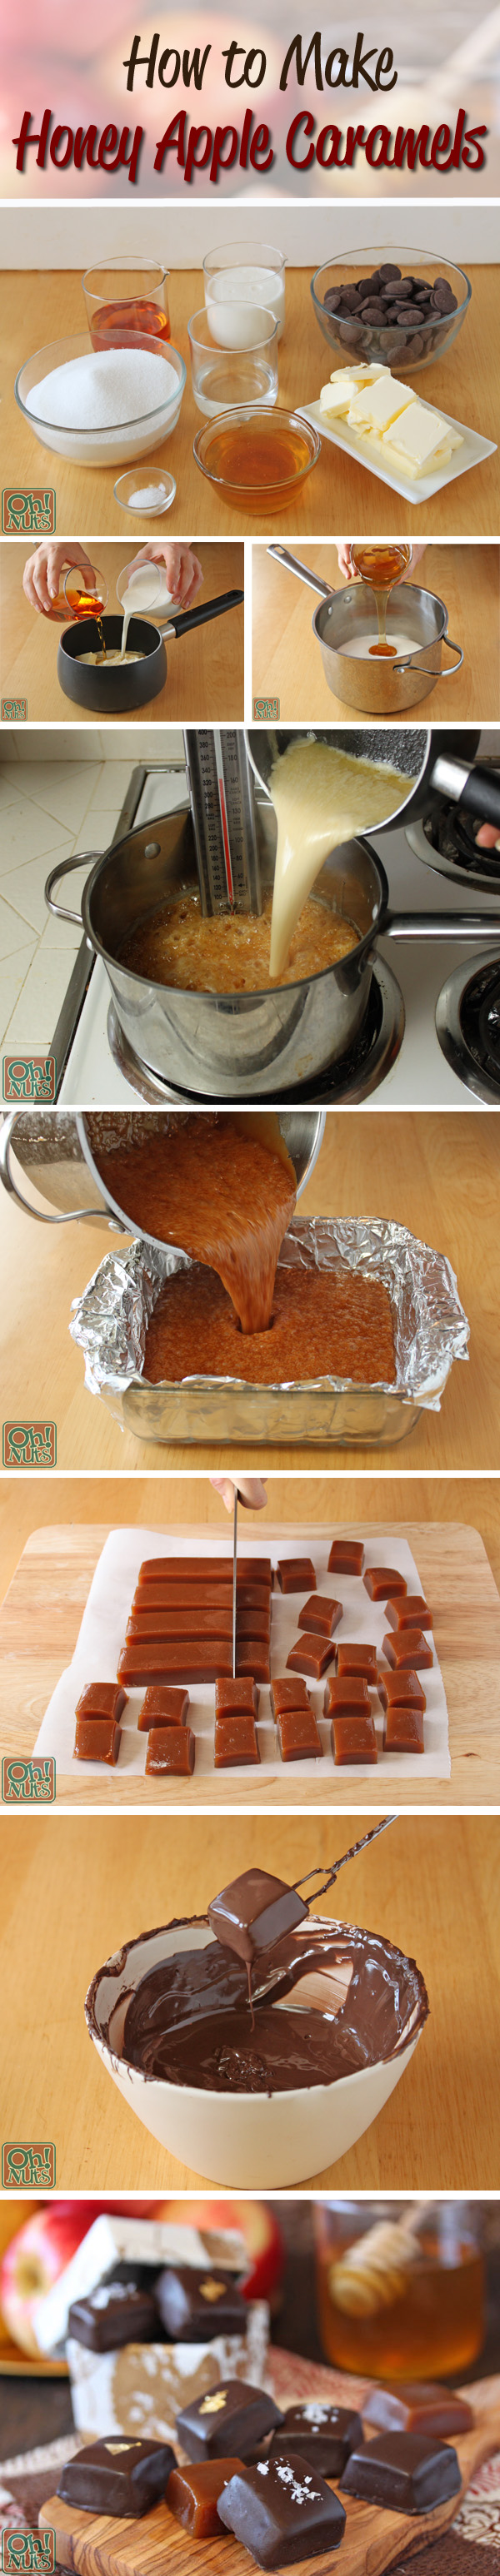 How to Make Honey Apple Caramels | OhNuts.com